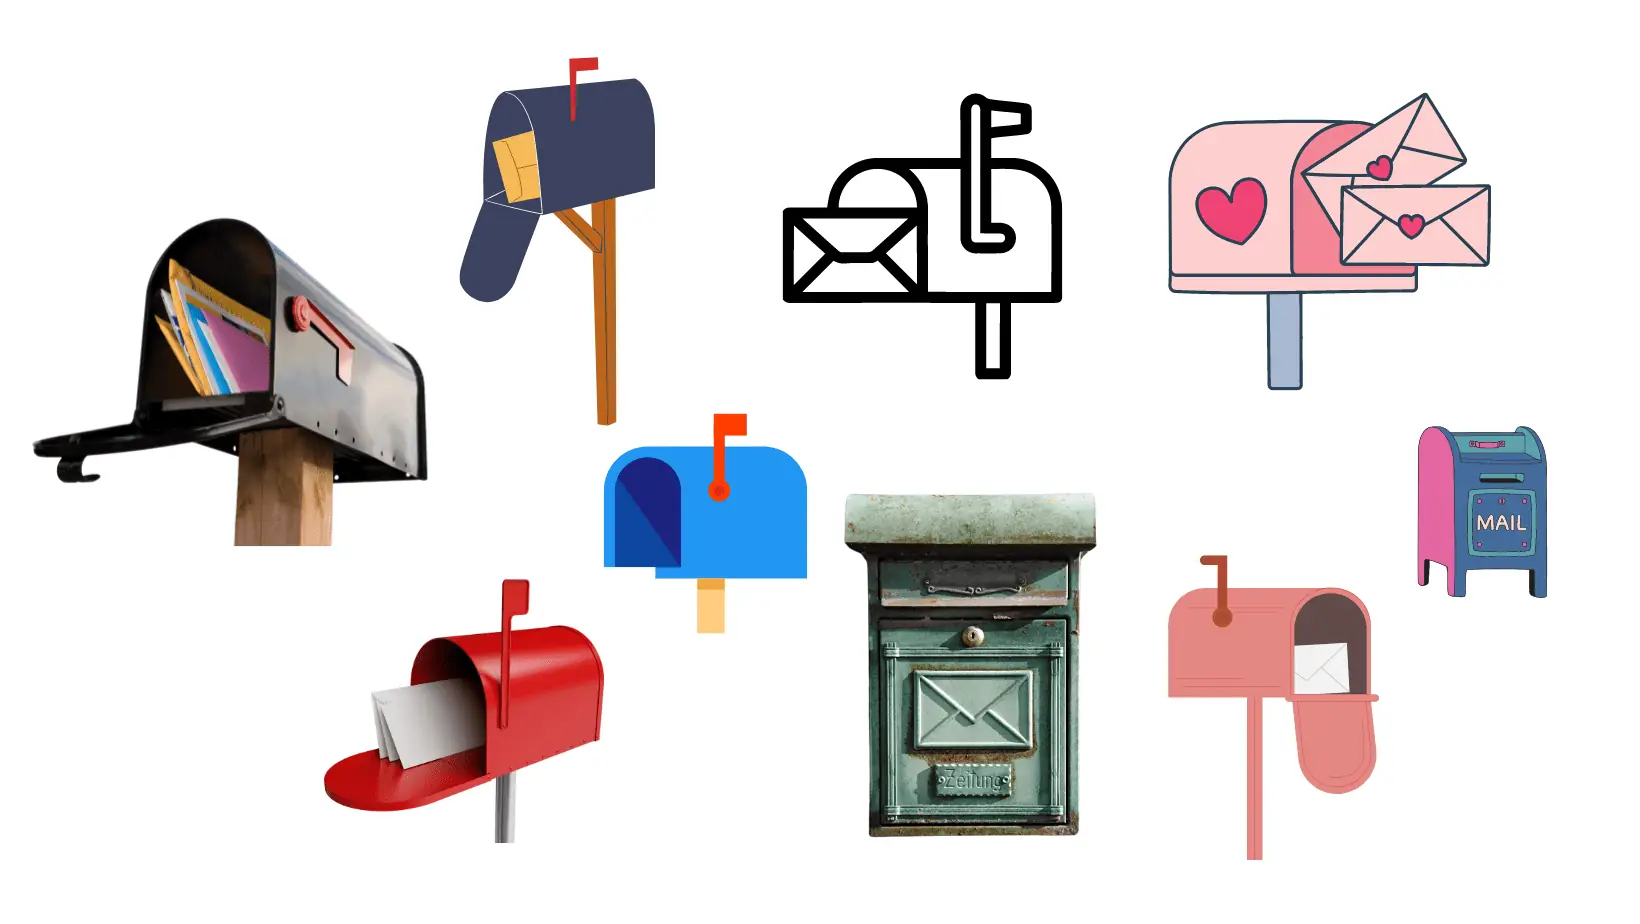 מקבץ של איורים של תיבות דואר מסוגים שונים